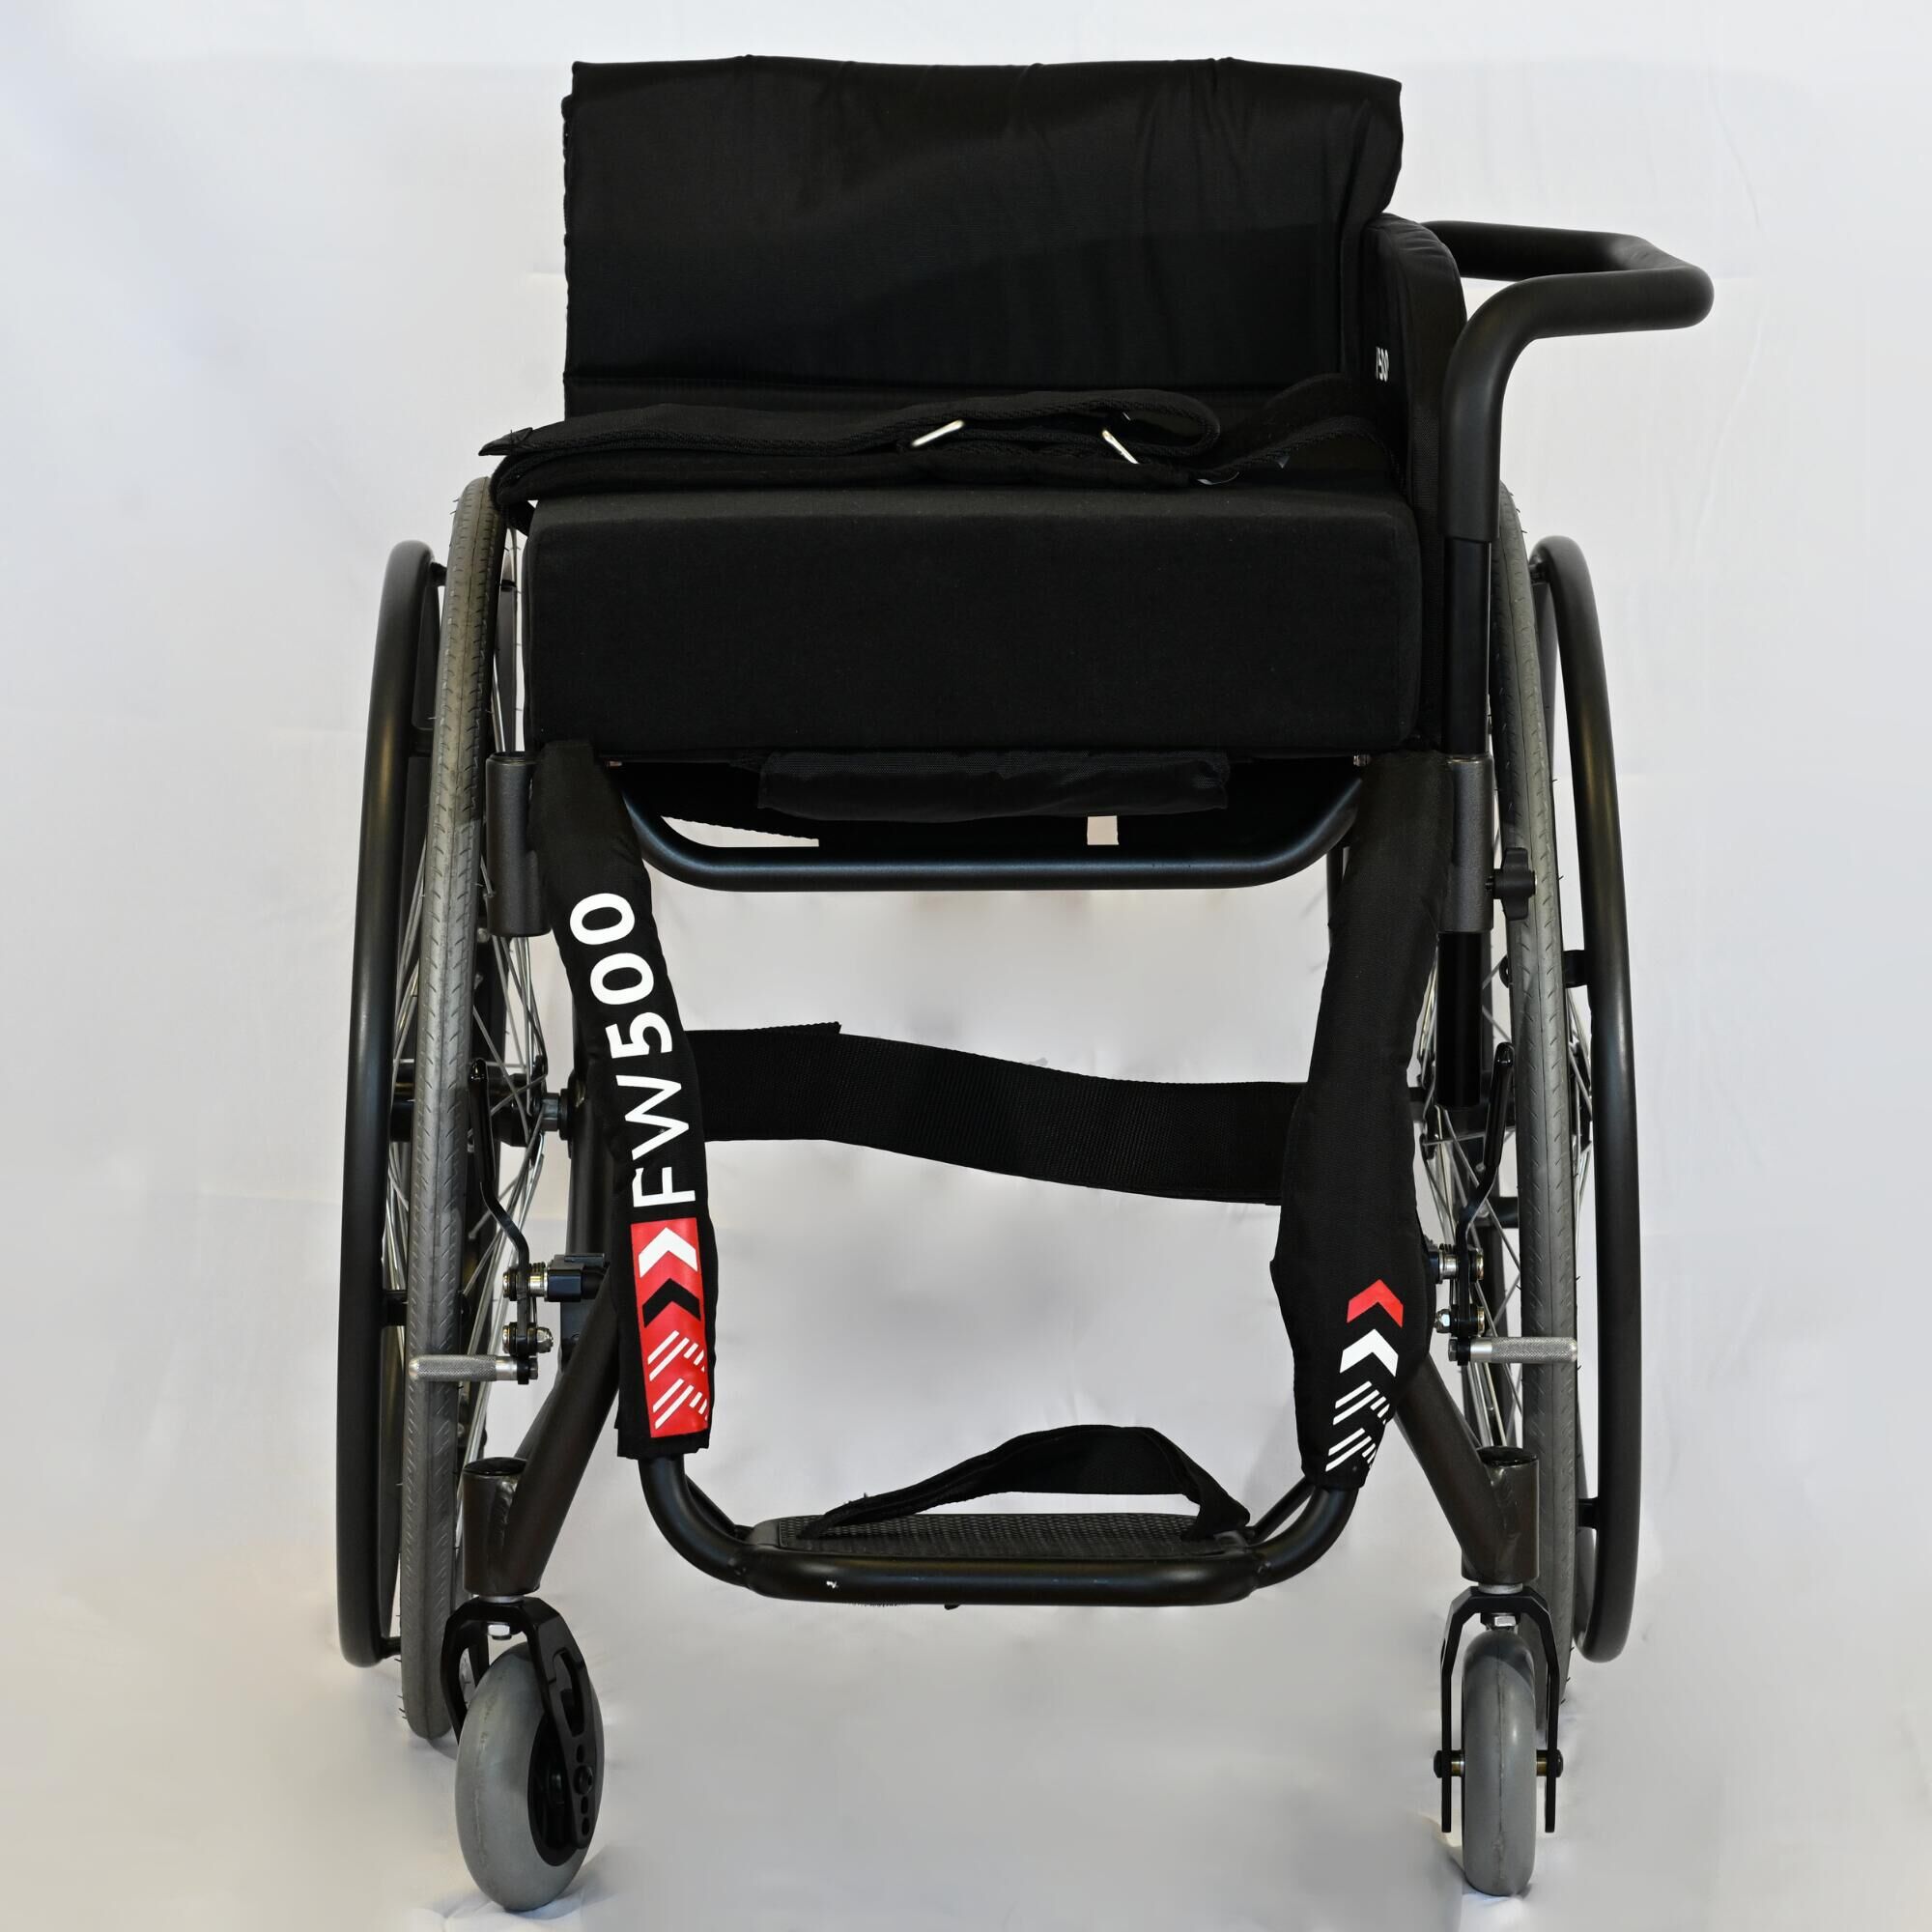 DECATHLON Fencing Adjustable Wheelchair FW500